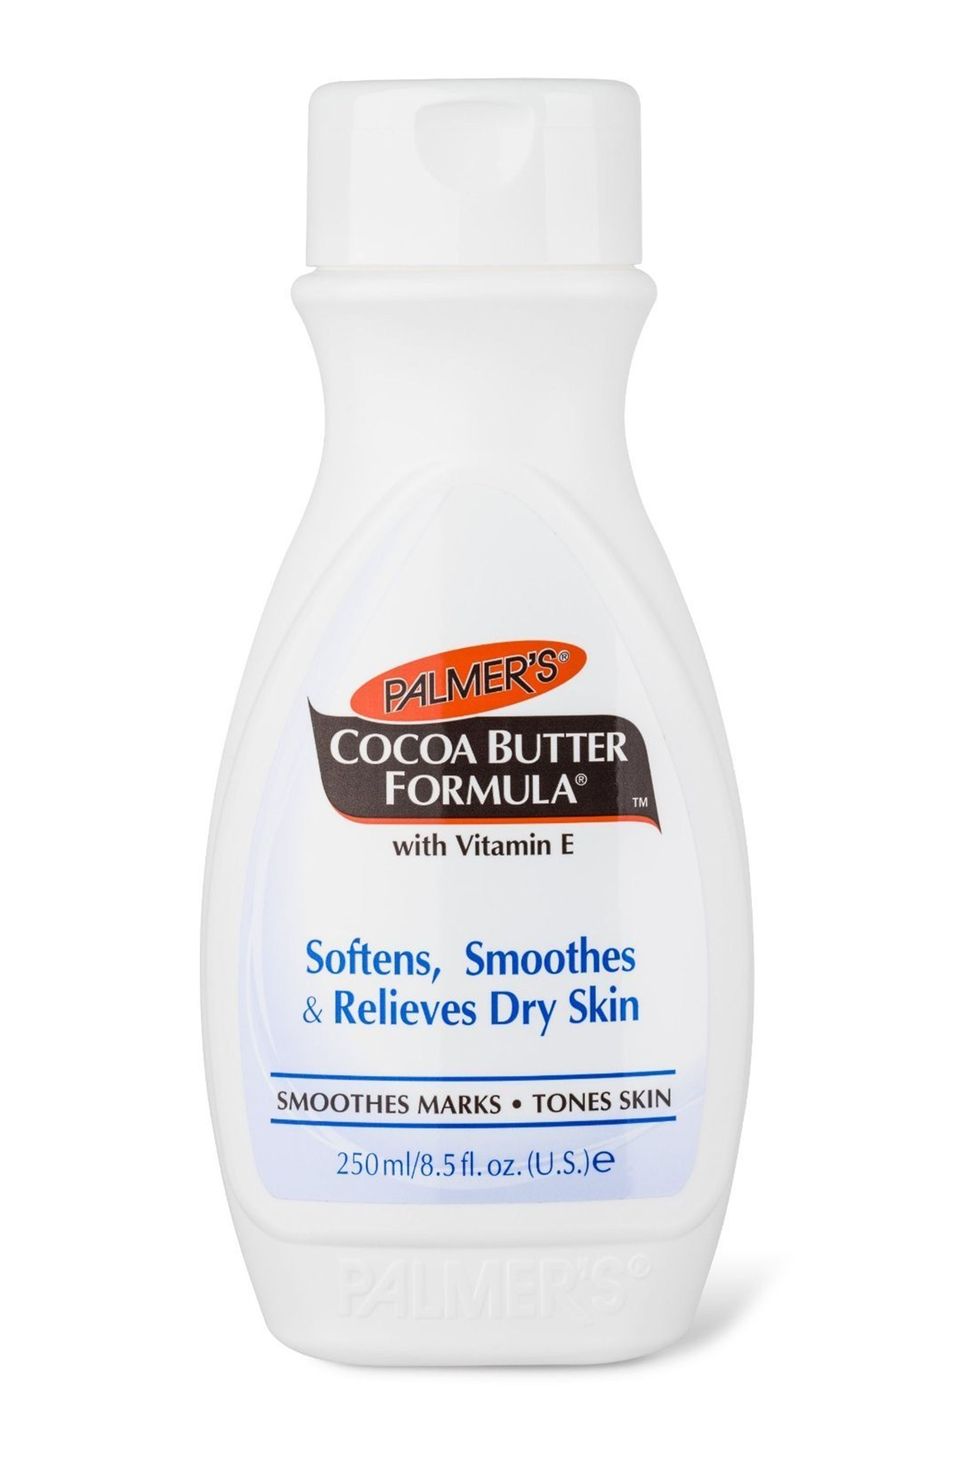 Cocoa Butter Formula with Vitamin E